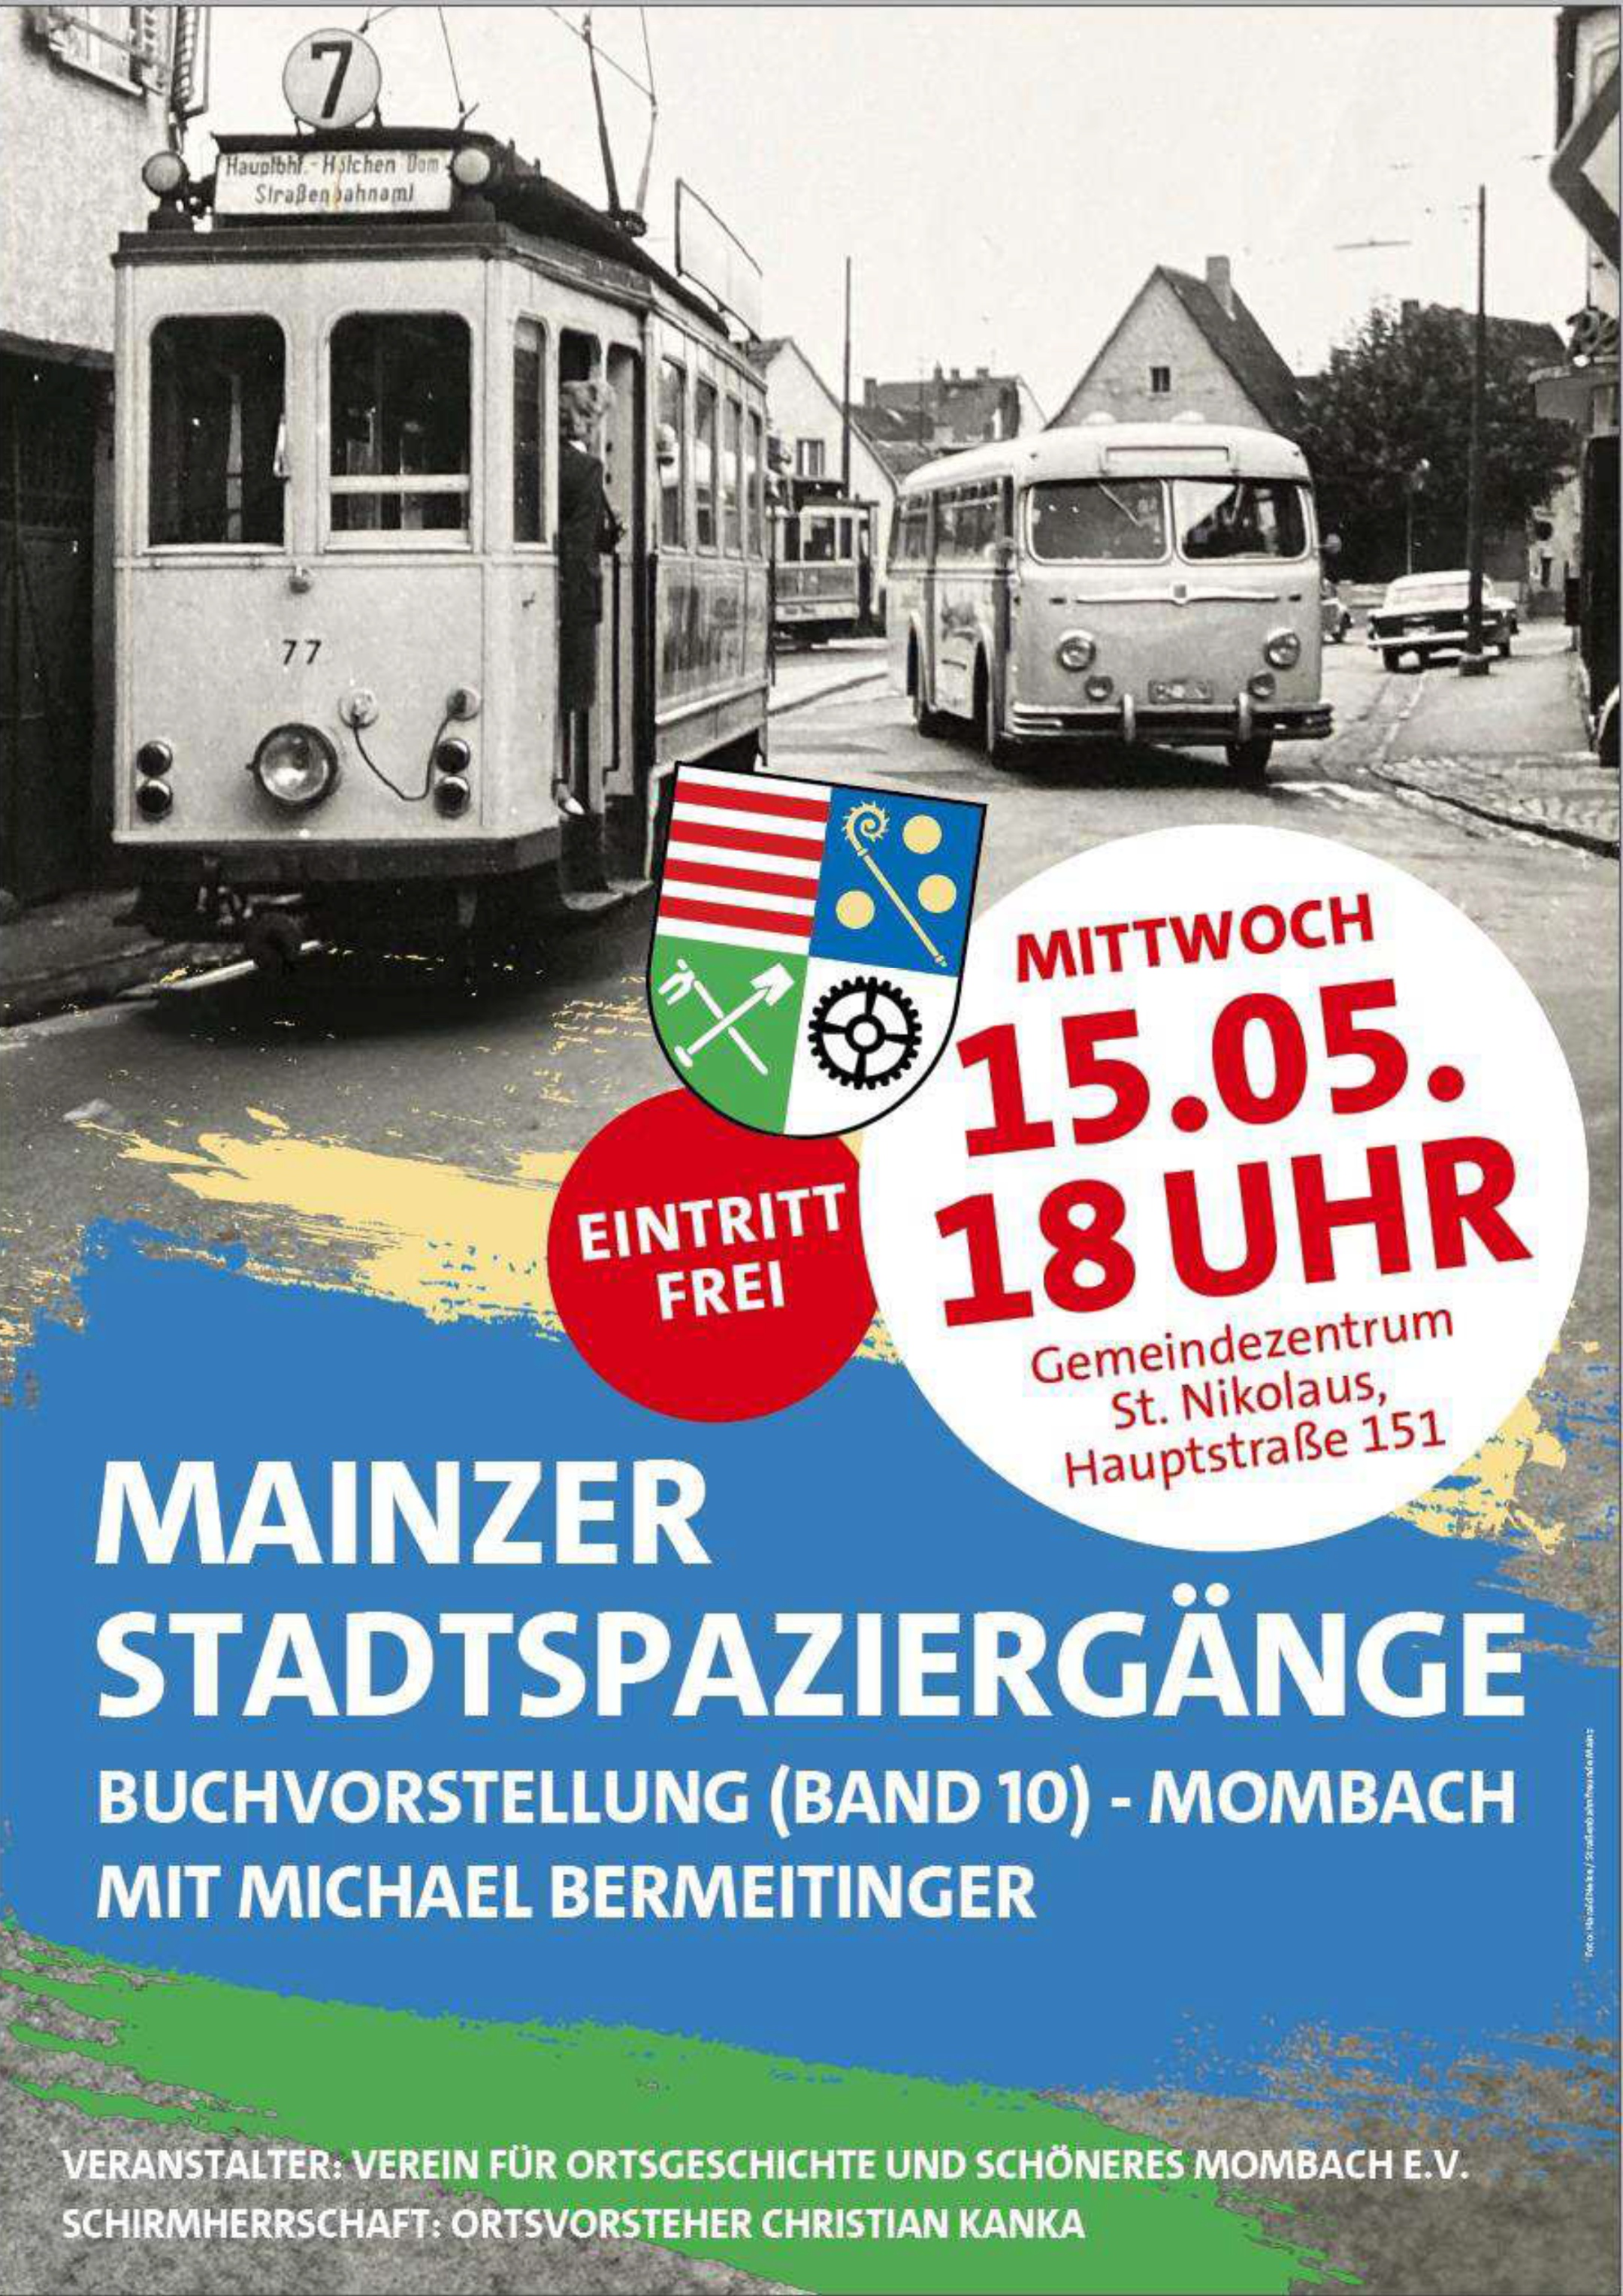 Mainzer Stadtspaziergänge - Buchvorstellung (Band 10) - Mombach Mit Michael Bermeitinger